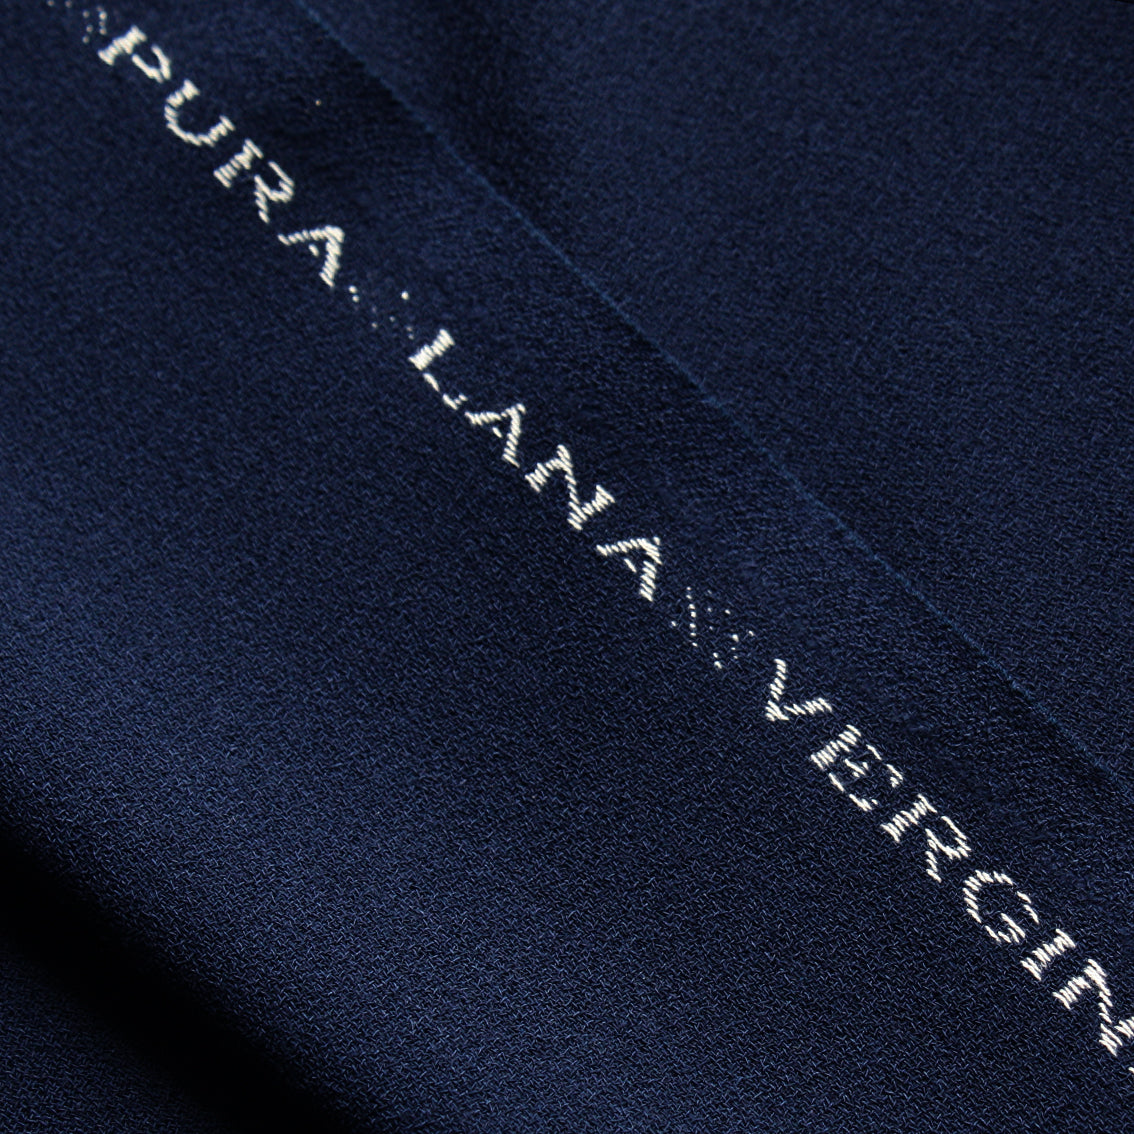 Passport Navy Motiv Crepe – Tessuti Fabrics - Online Fabric Store